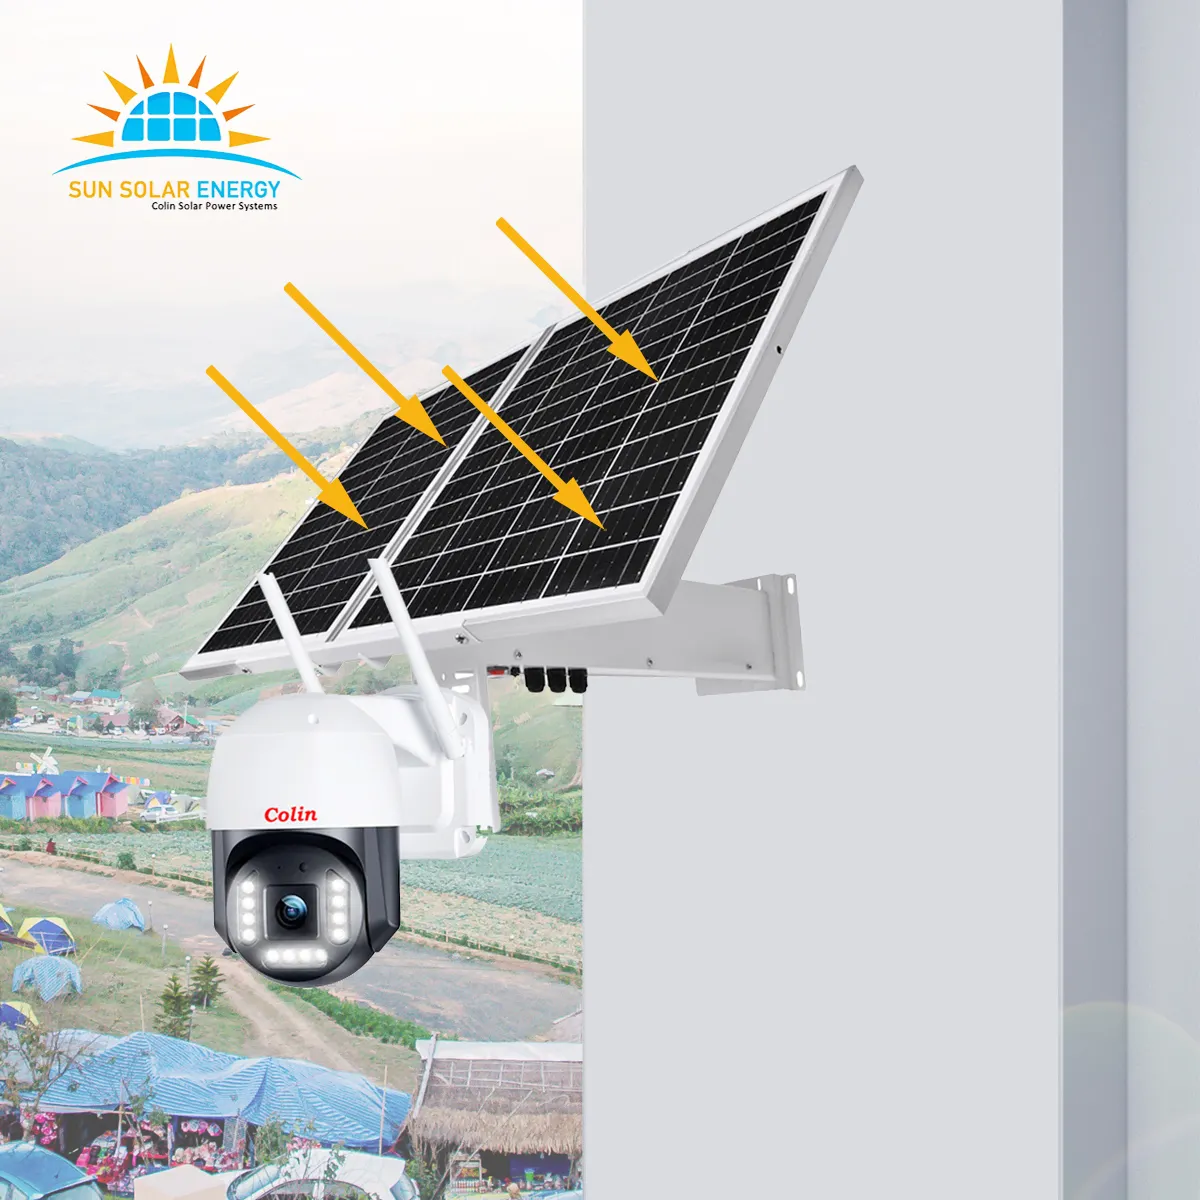 Kamera keamanan 4K daya matahari tanpa henti dengan panel surya 60W kit baterai besar 30ah khusus untuk cctv industri rebluum